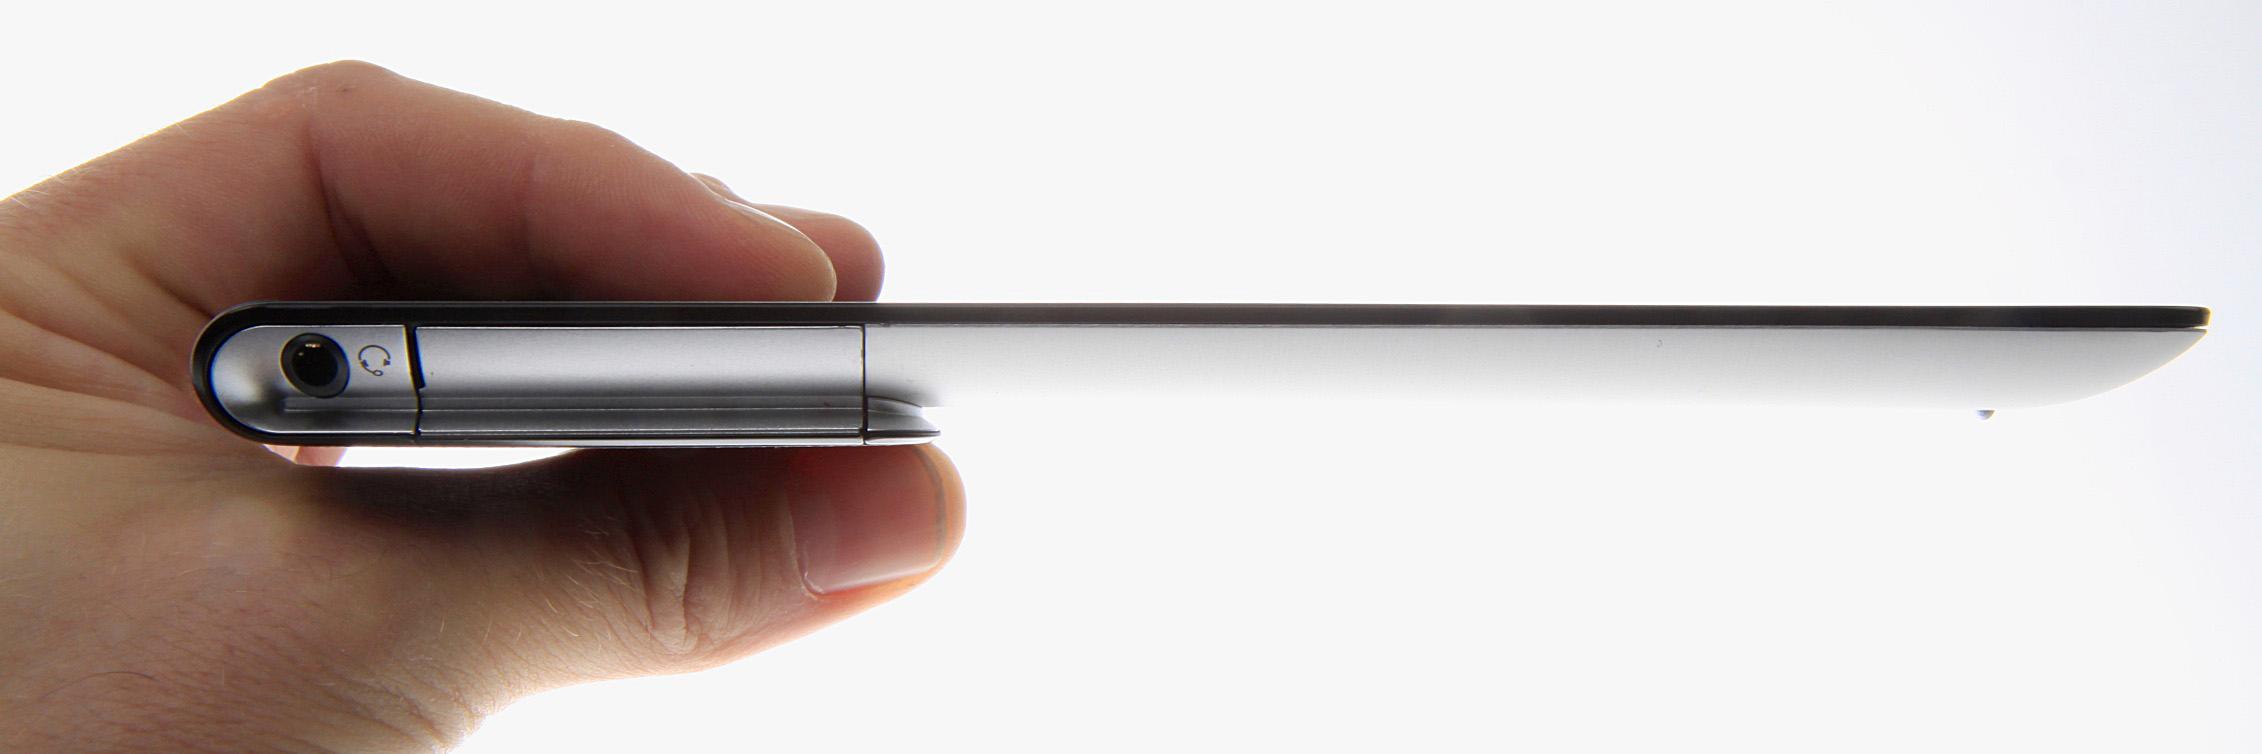 Sony Xperia Tablet S er mye tynnere enn fjorårets Tablet S-modell. .Foto: Kurt Lekanger, Amobil.no